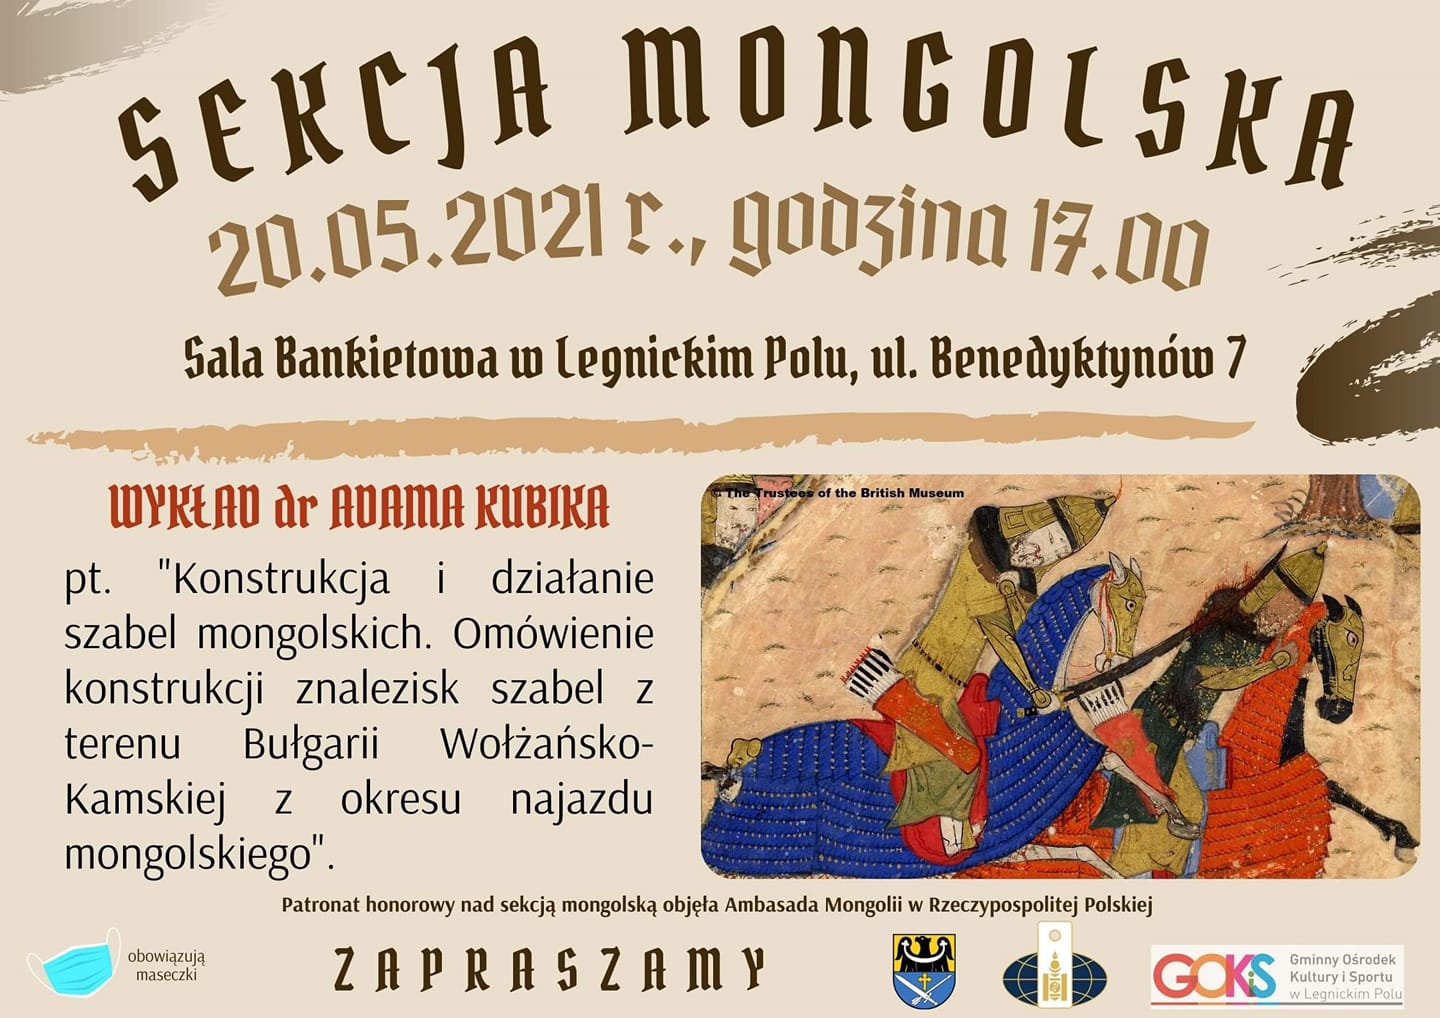 plakat dotyczący sekcji mogolskiej z informacjami na temat dnia godziny oraz miejsca wydarzenia